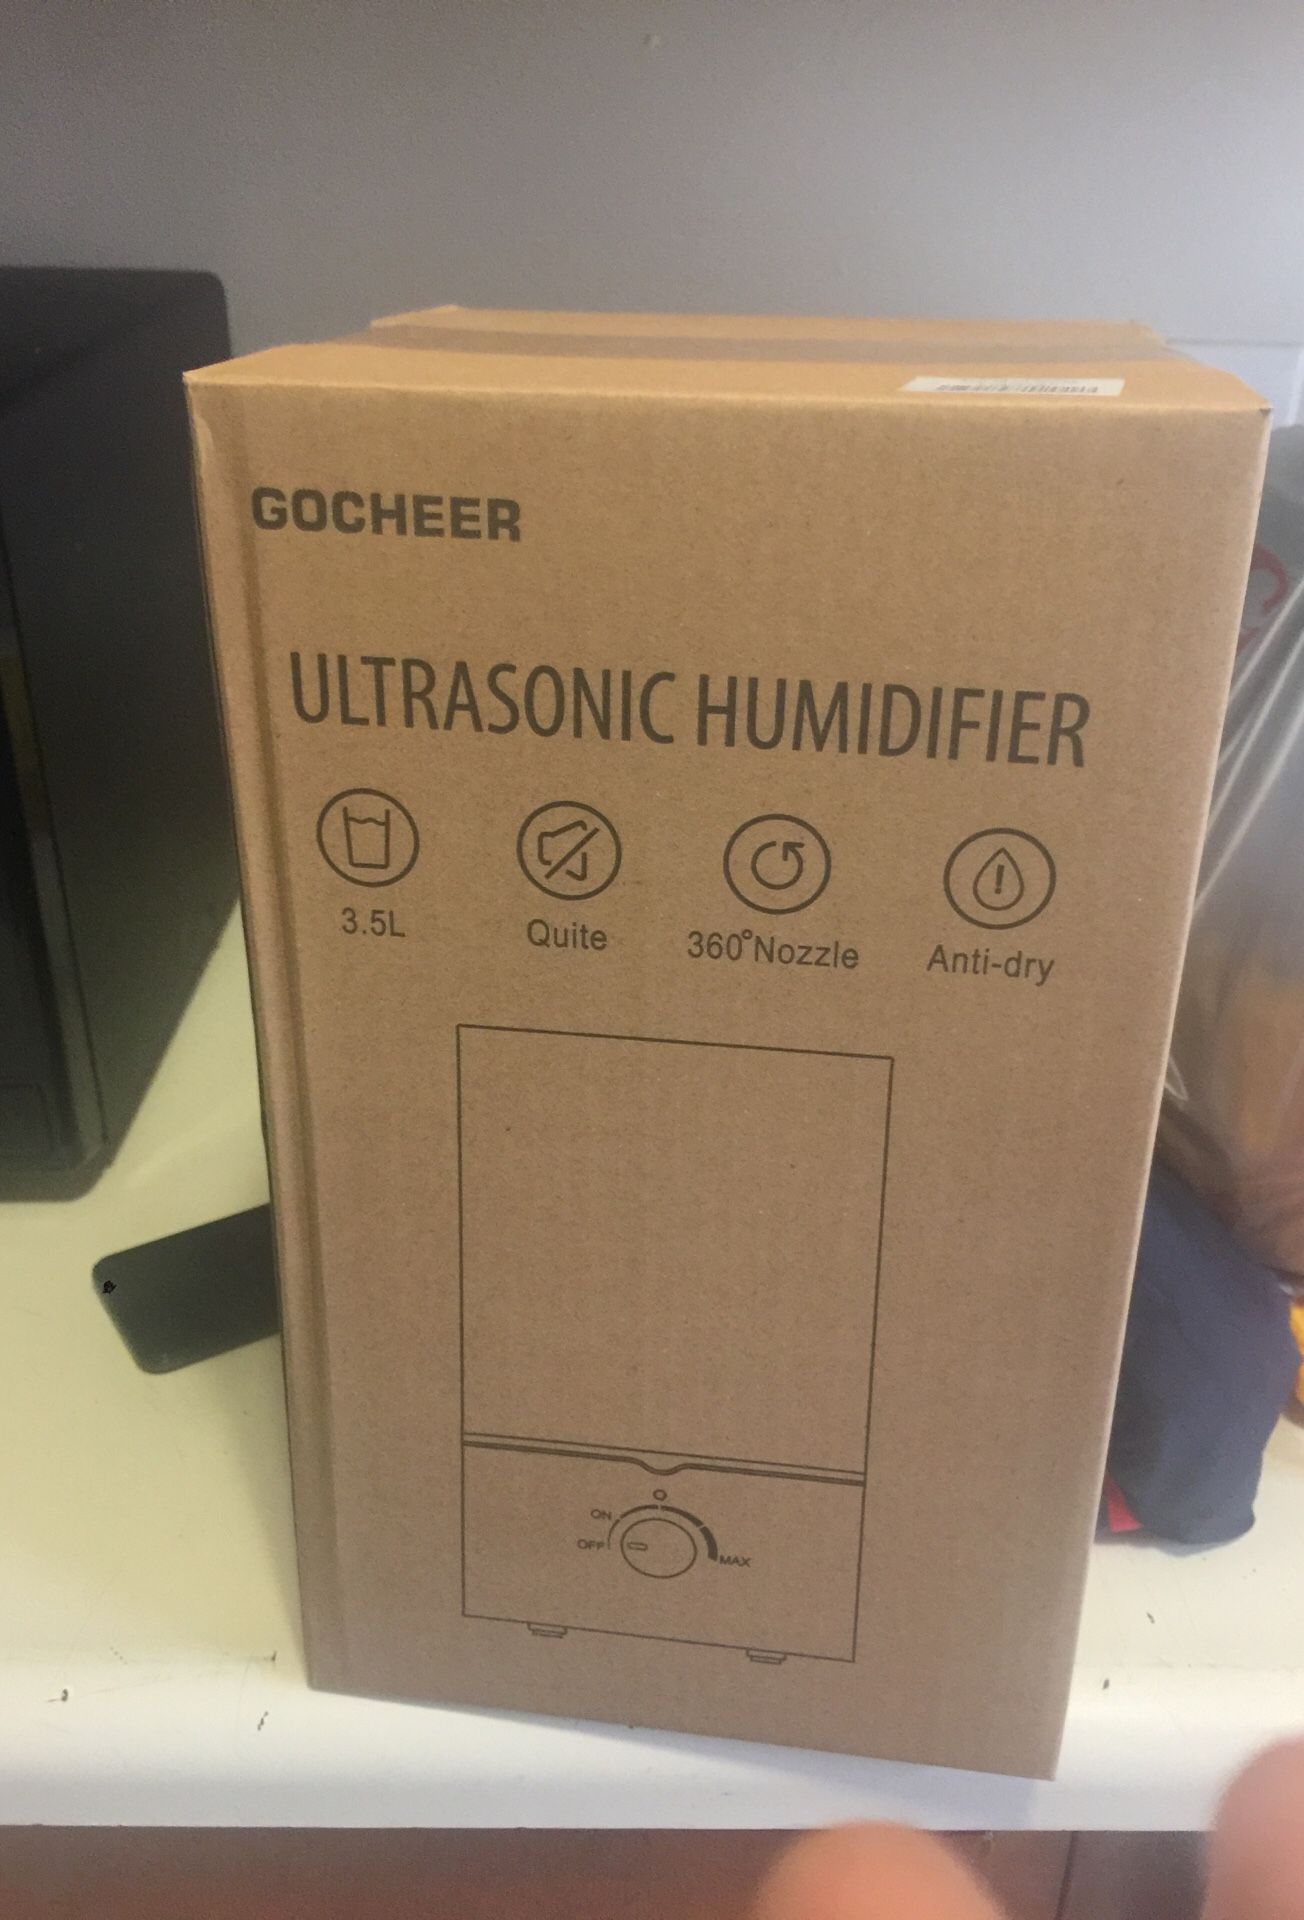 Gocheer ultrasonic Humidifier